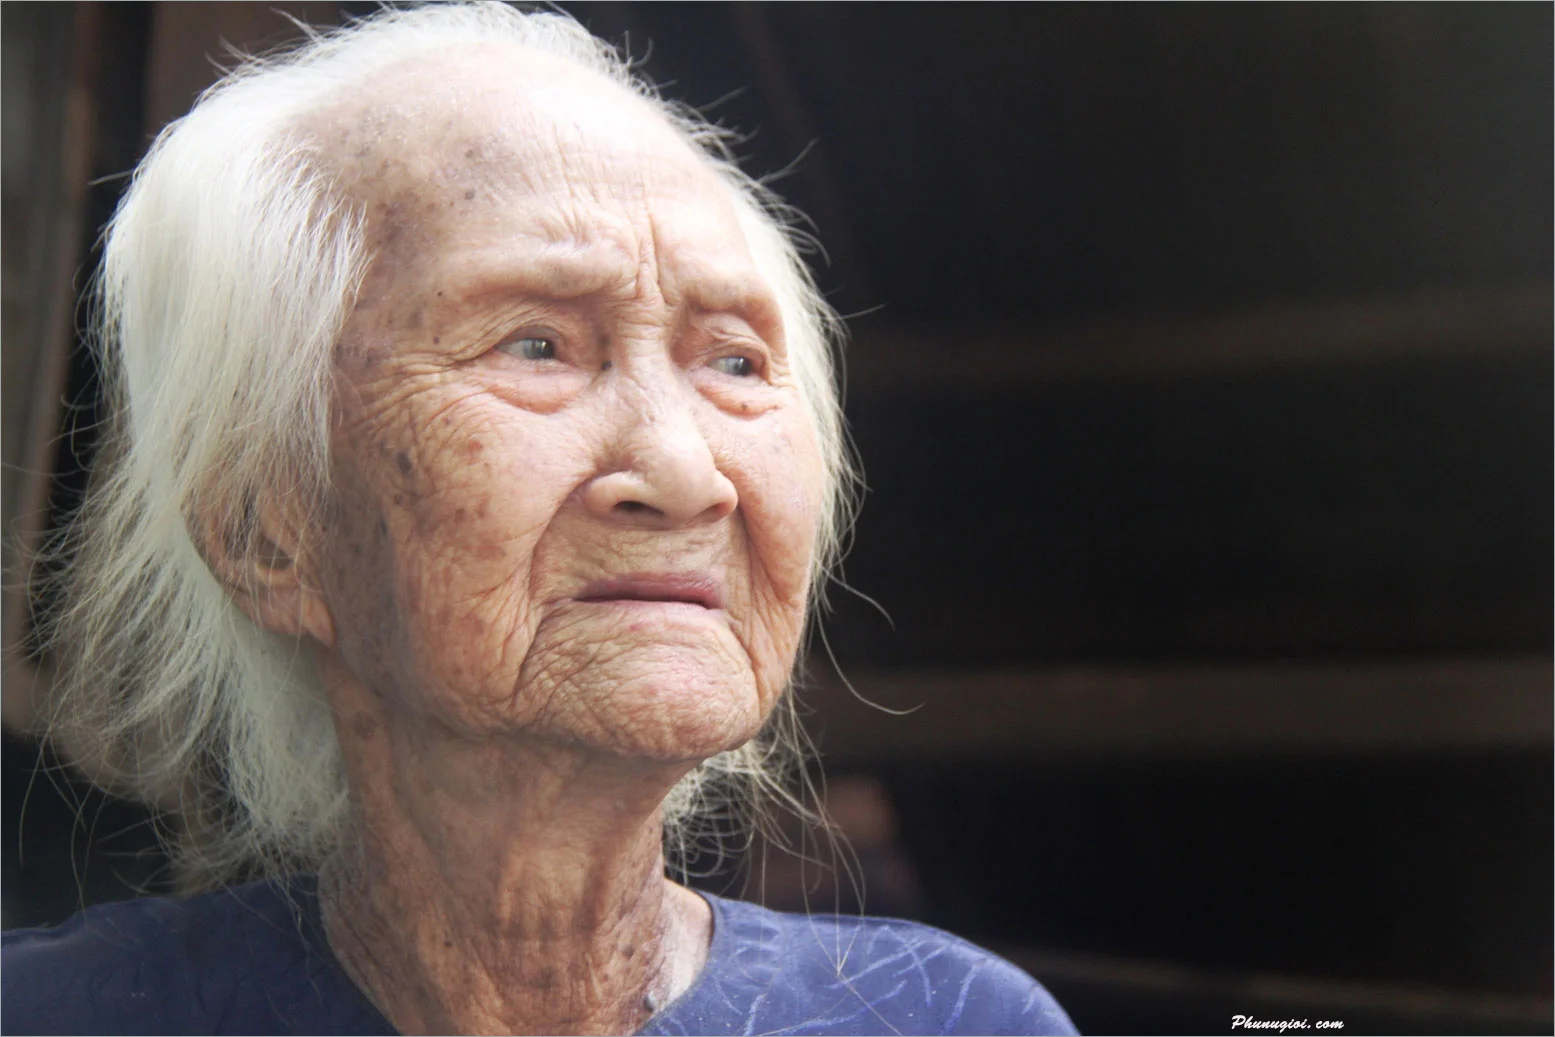 59+ Ảnh Mẹ Già Tần Tảo, Vất Vả, Nhìn Cảm Động Rơi Nước Mắt - Trung ...